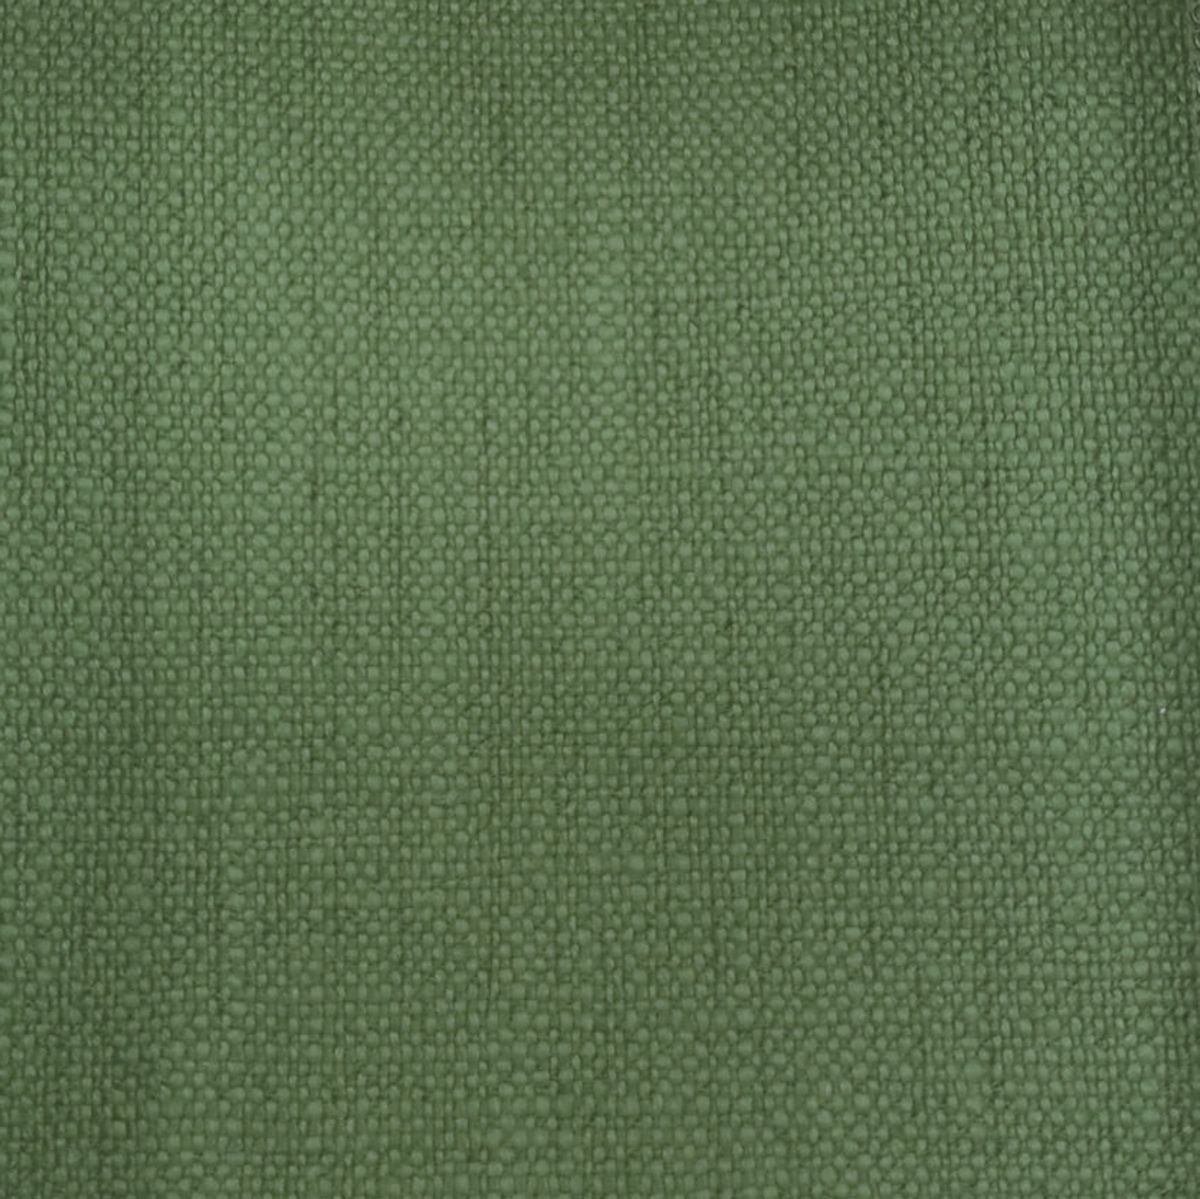 Trento Kiwi Fabric by Voyage Maison